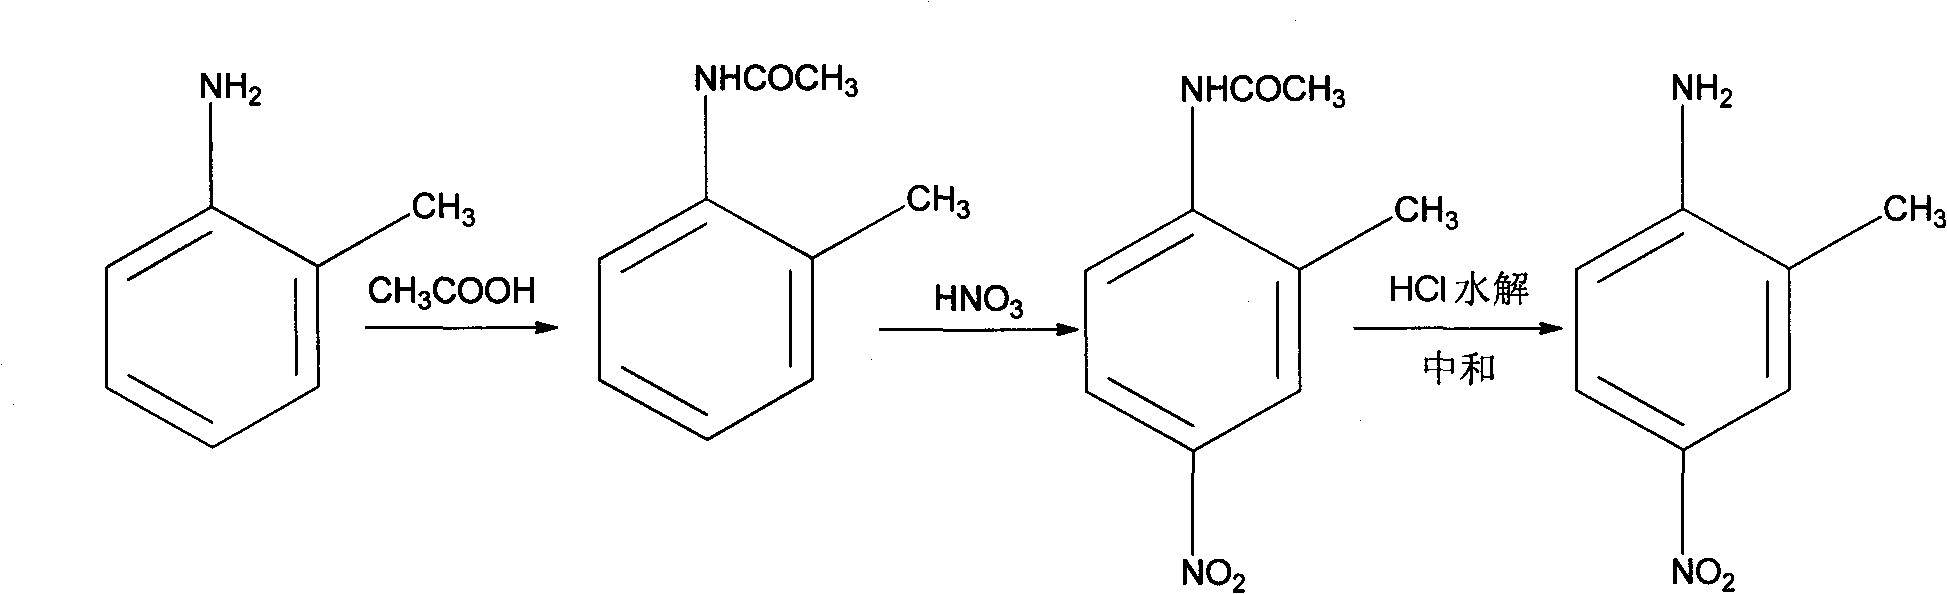 Preparation method of 2-methyl-4-nitrophenylamine